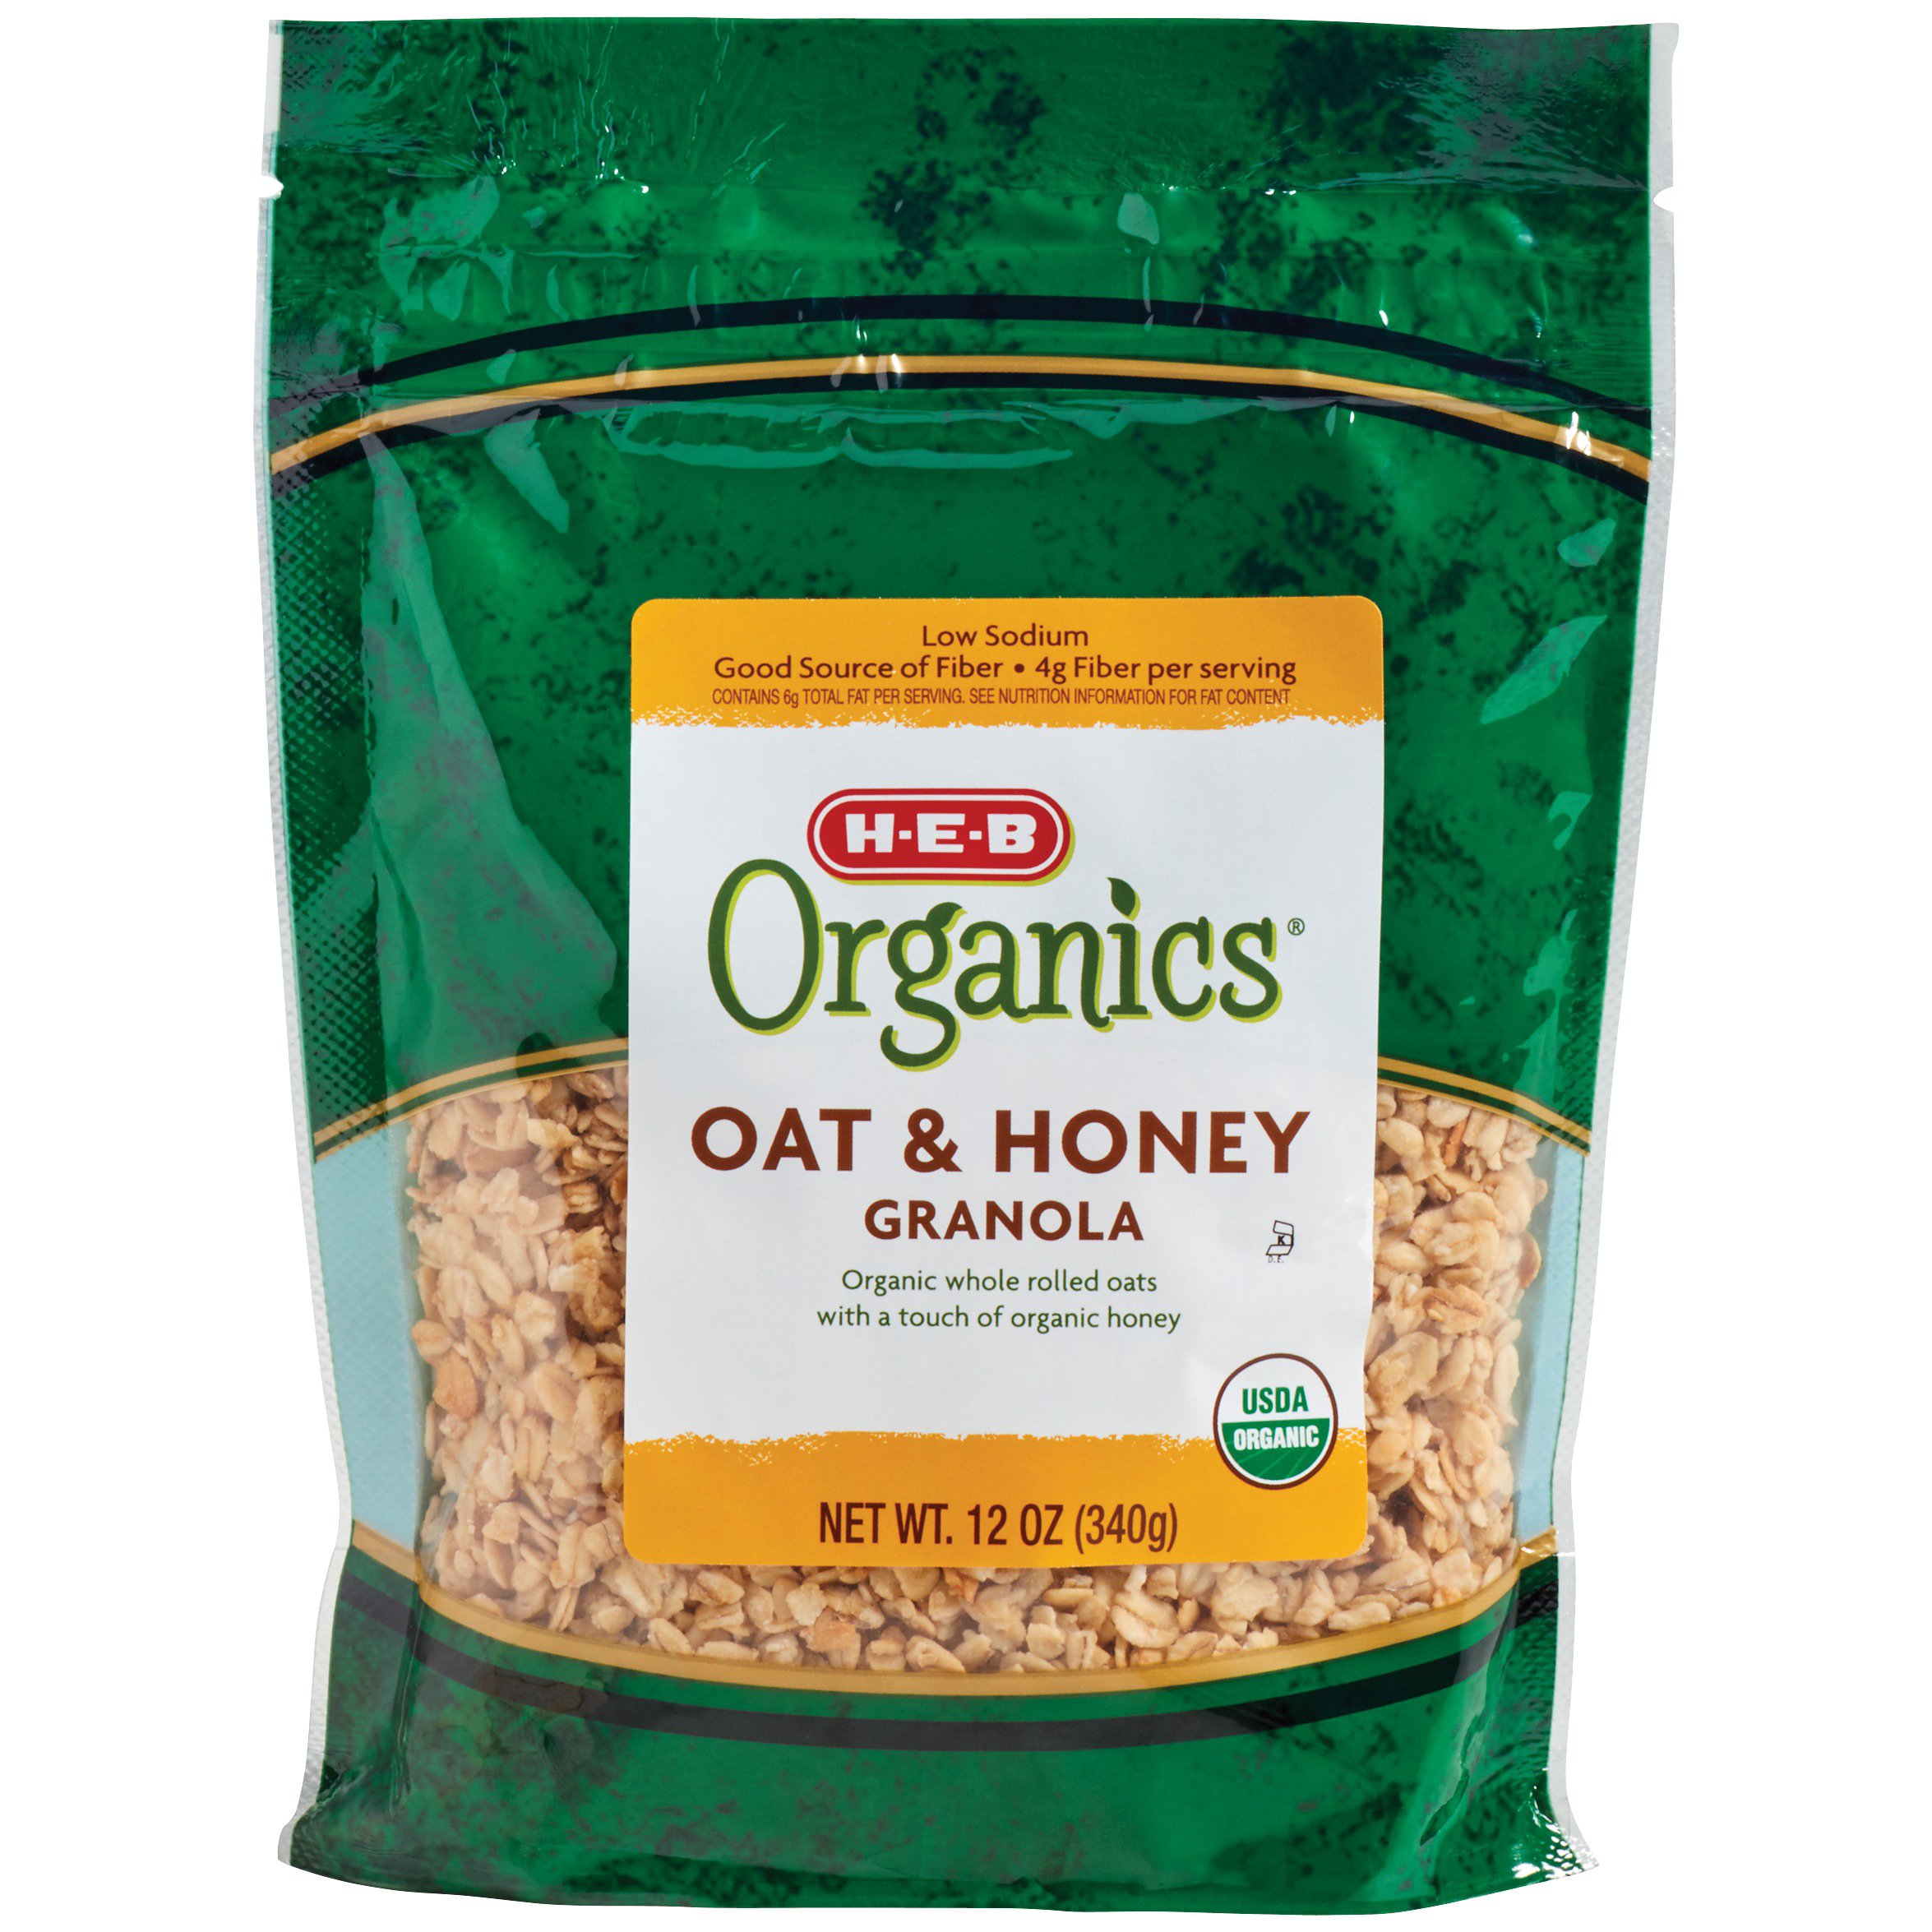 H-E-B Organics Oat & Honey Granola - Shop Cereal at H-E-B